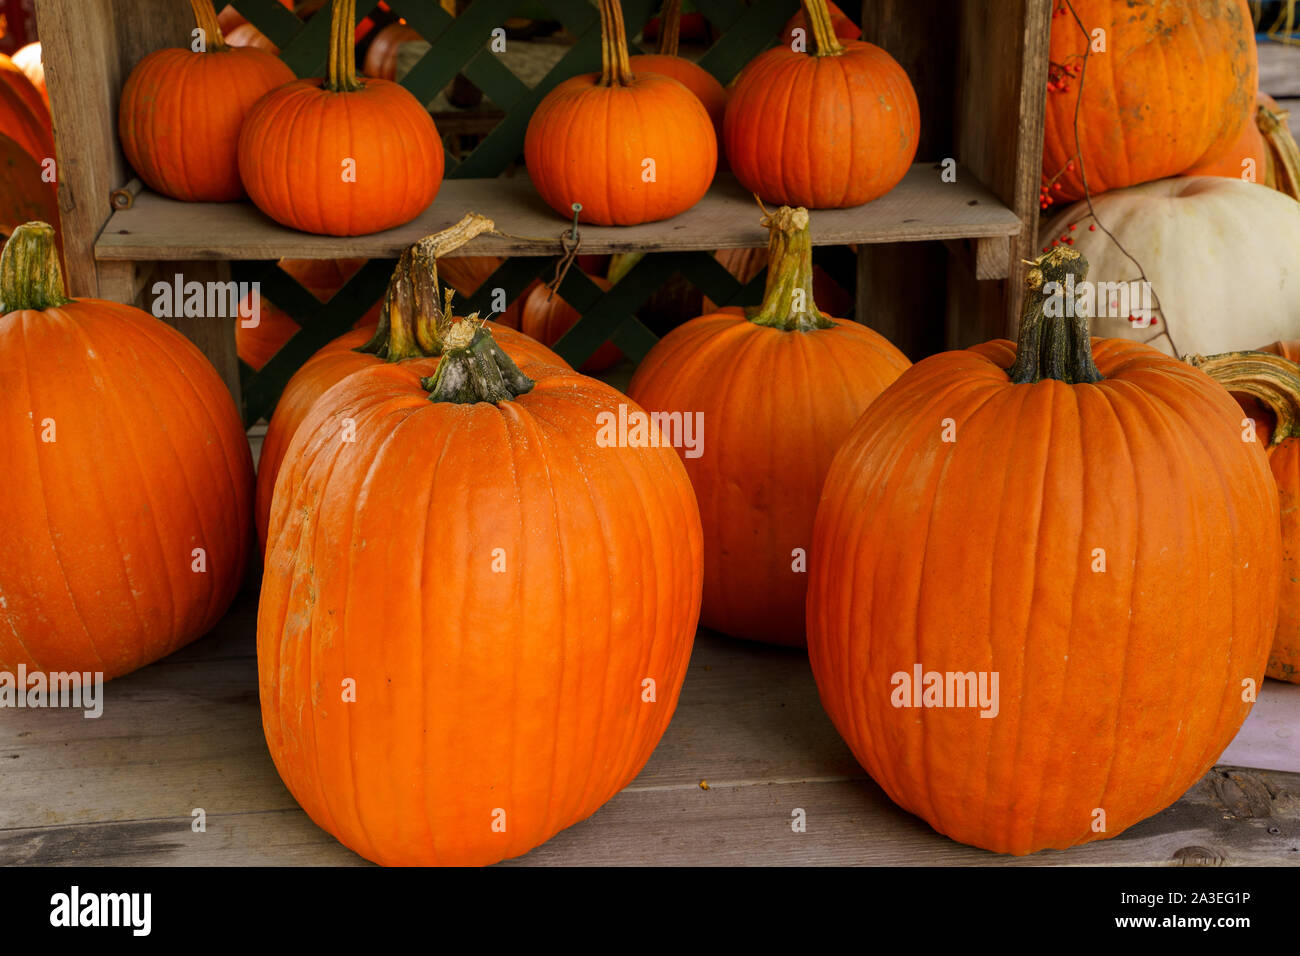 Un display di autunno di grandi e piccole zucche arancione. Foto Stock